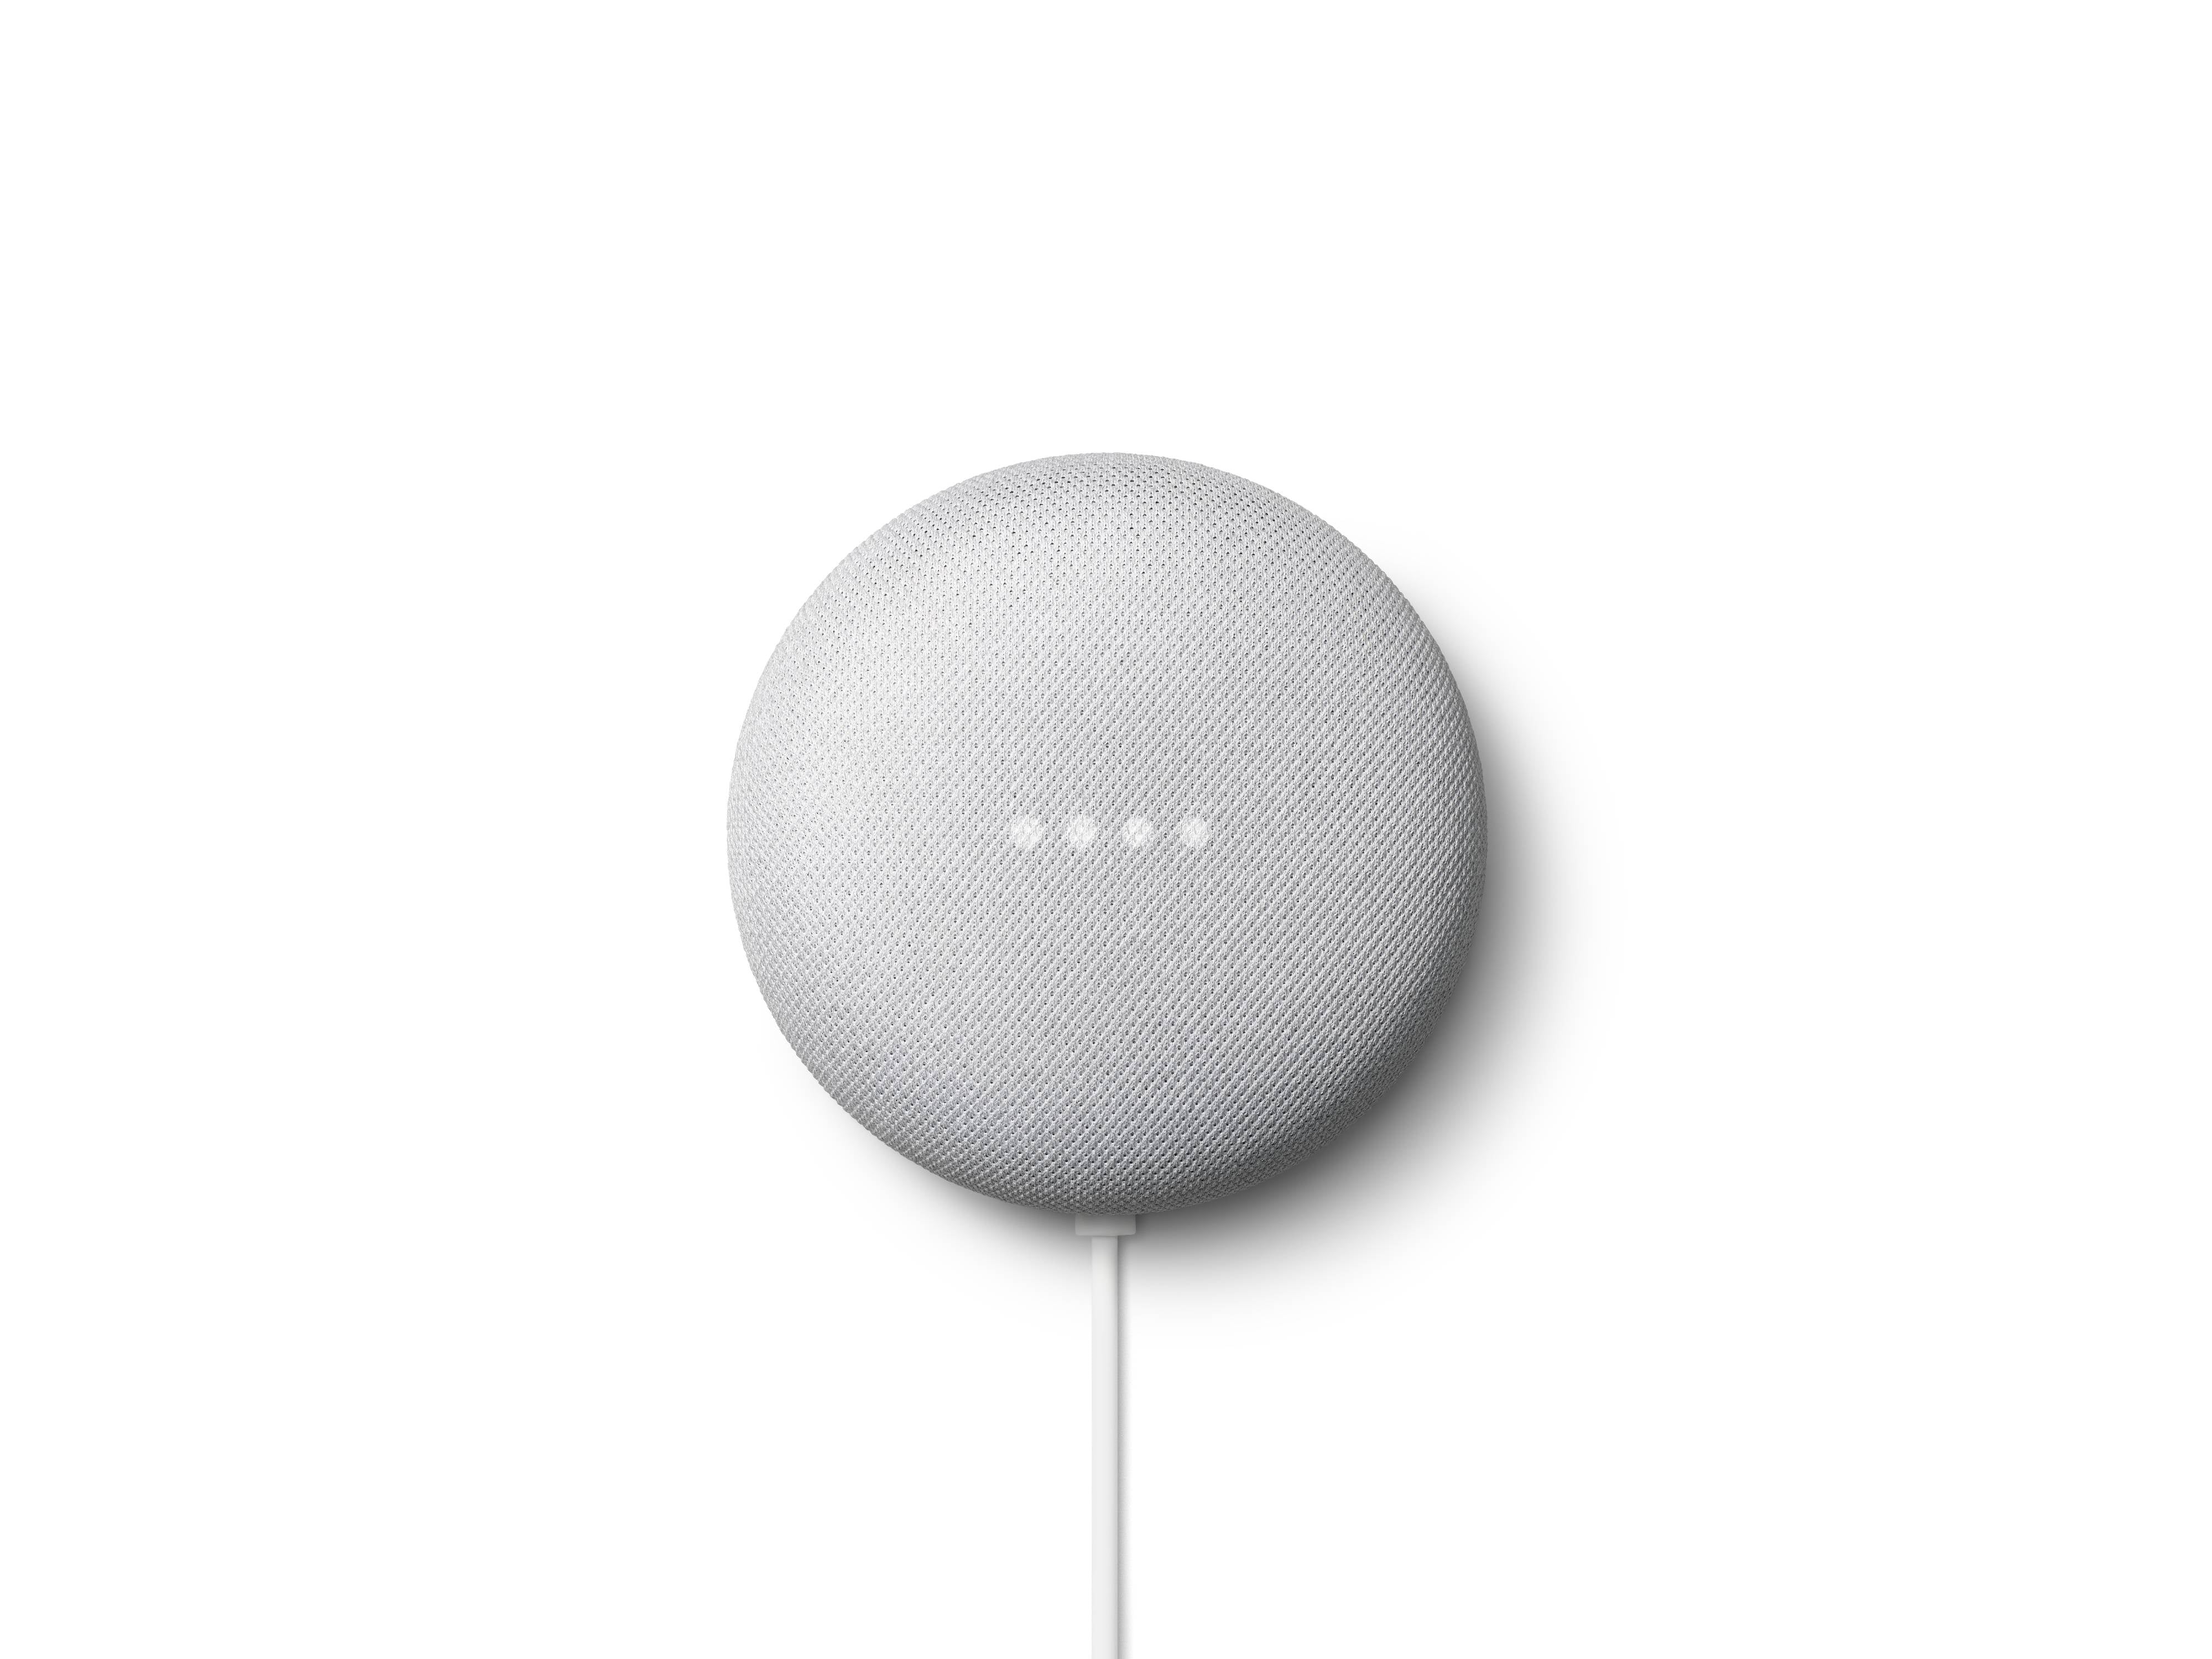 Google Nest Mini (2nd Generation) - Chalk - Walmart.com $18